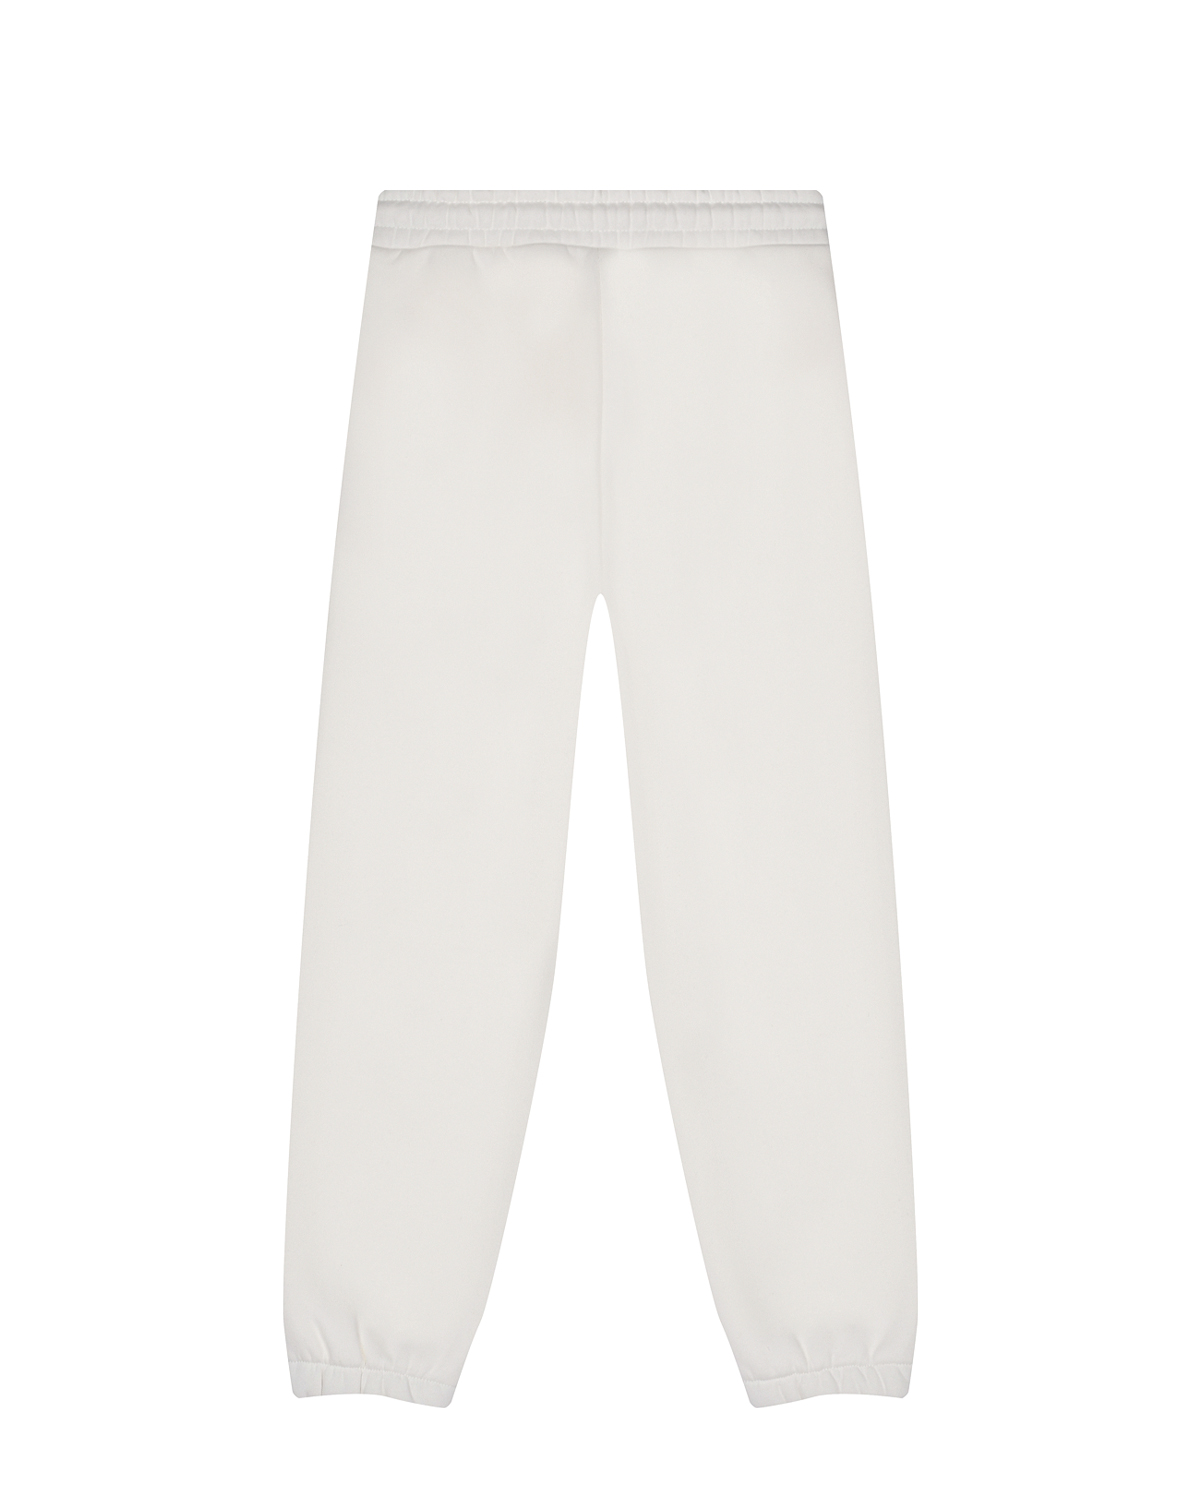 Спортивные брюки молочного цвета Dan Maralex детские, размер 116 - фото 2